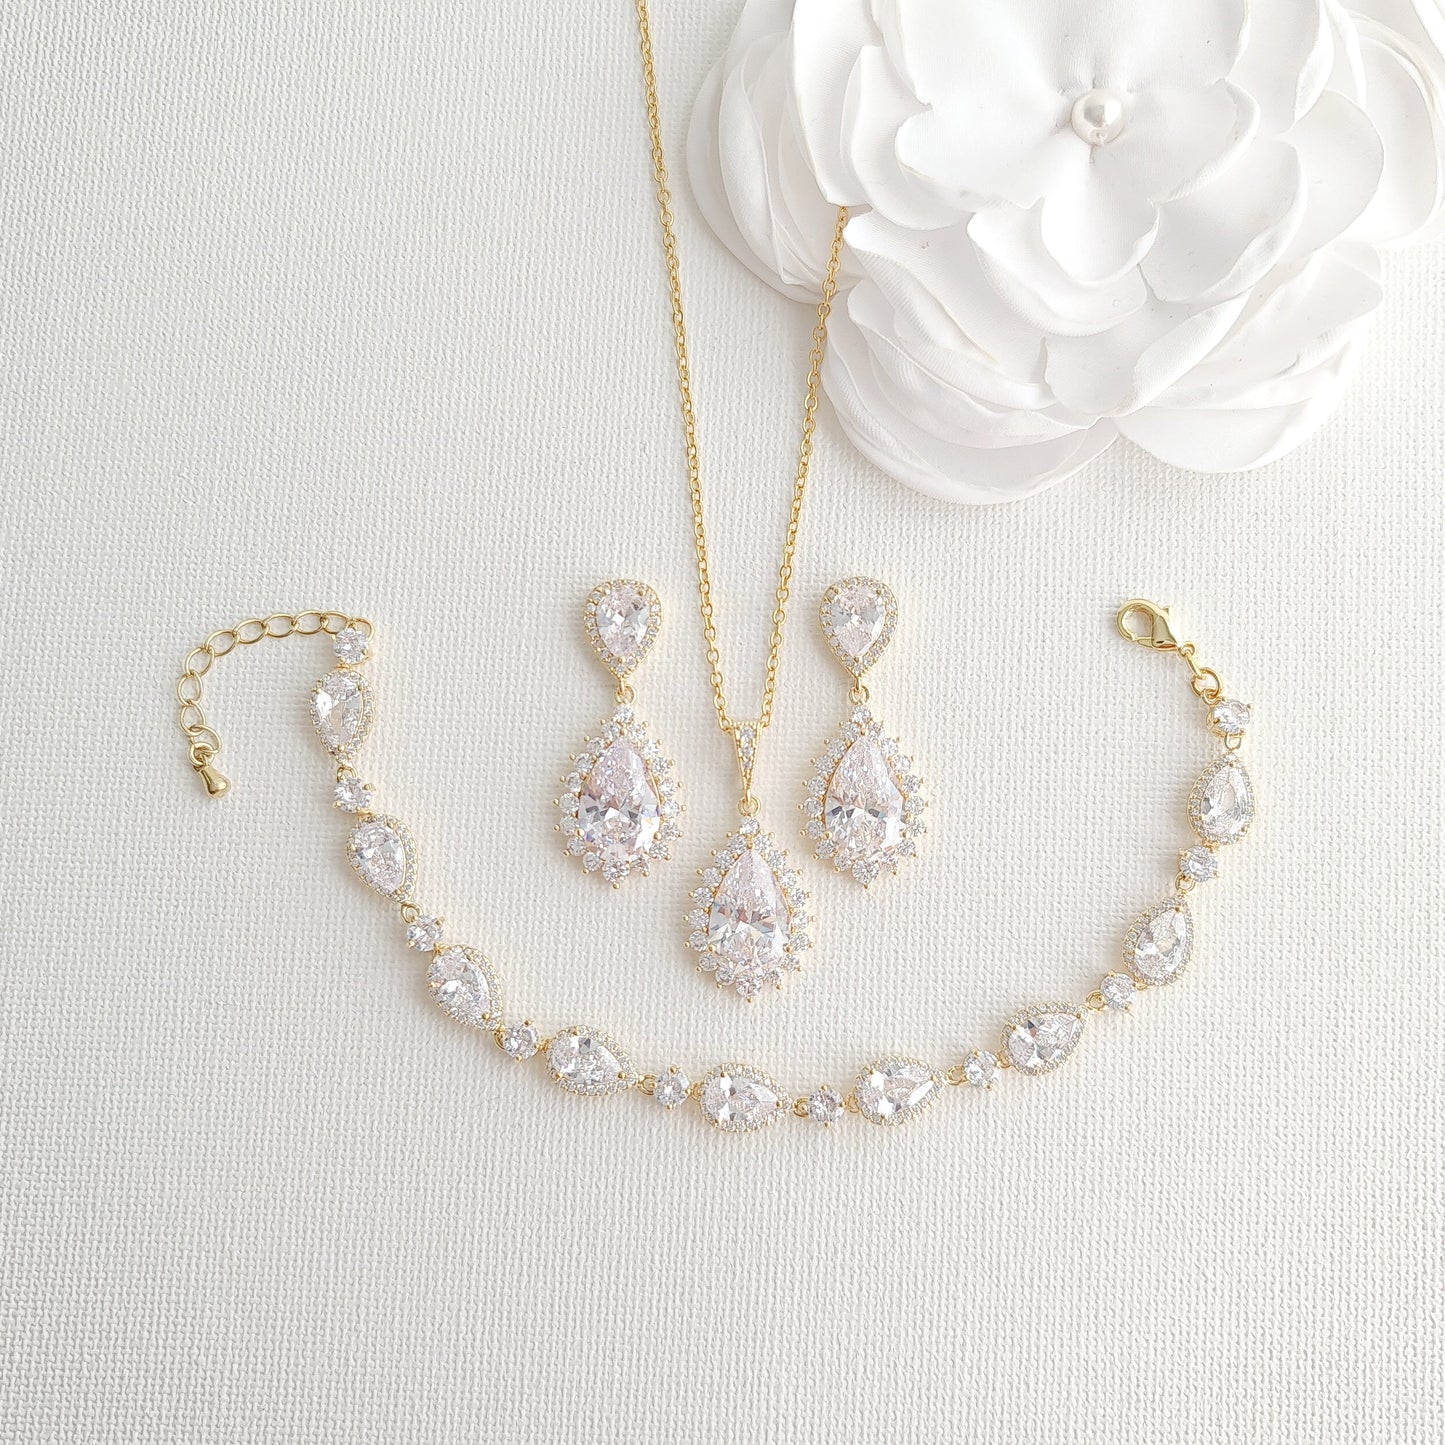 gold earrings necklace bracelet set